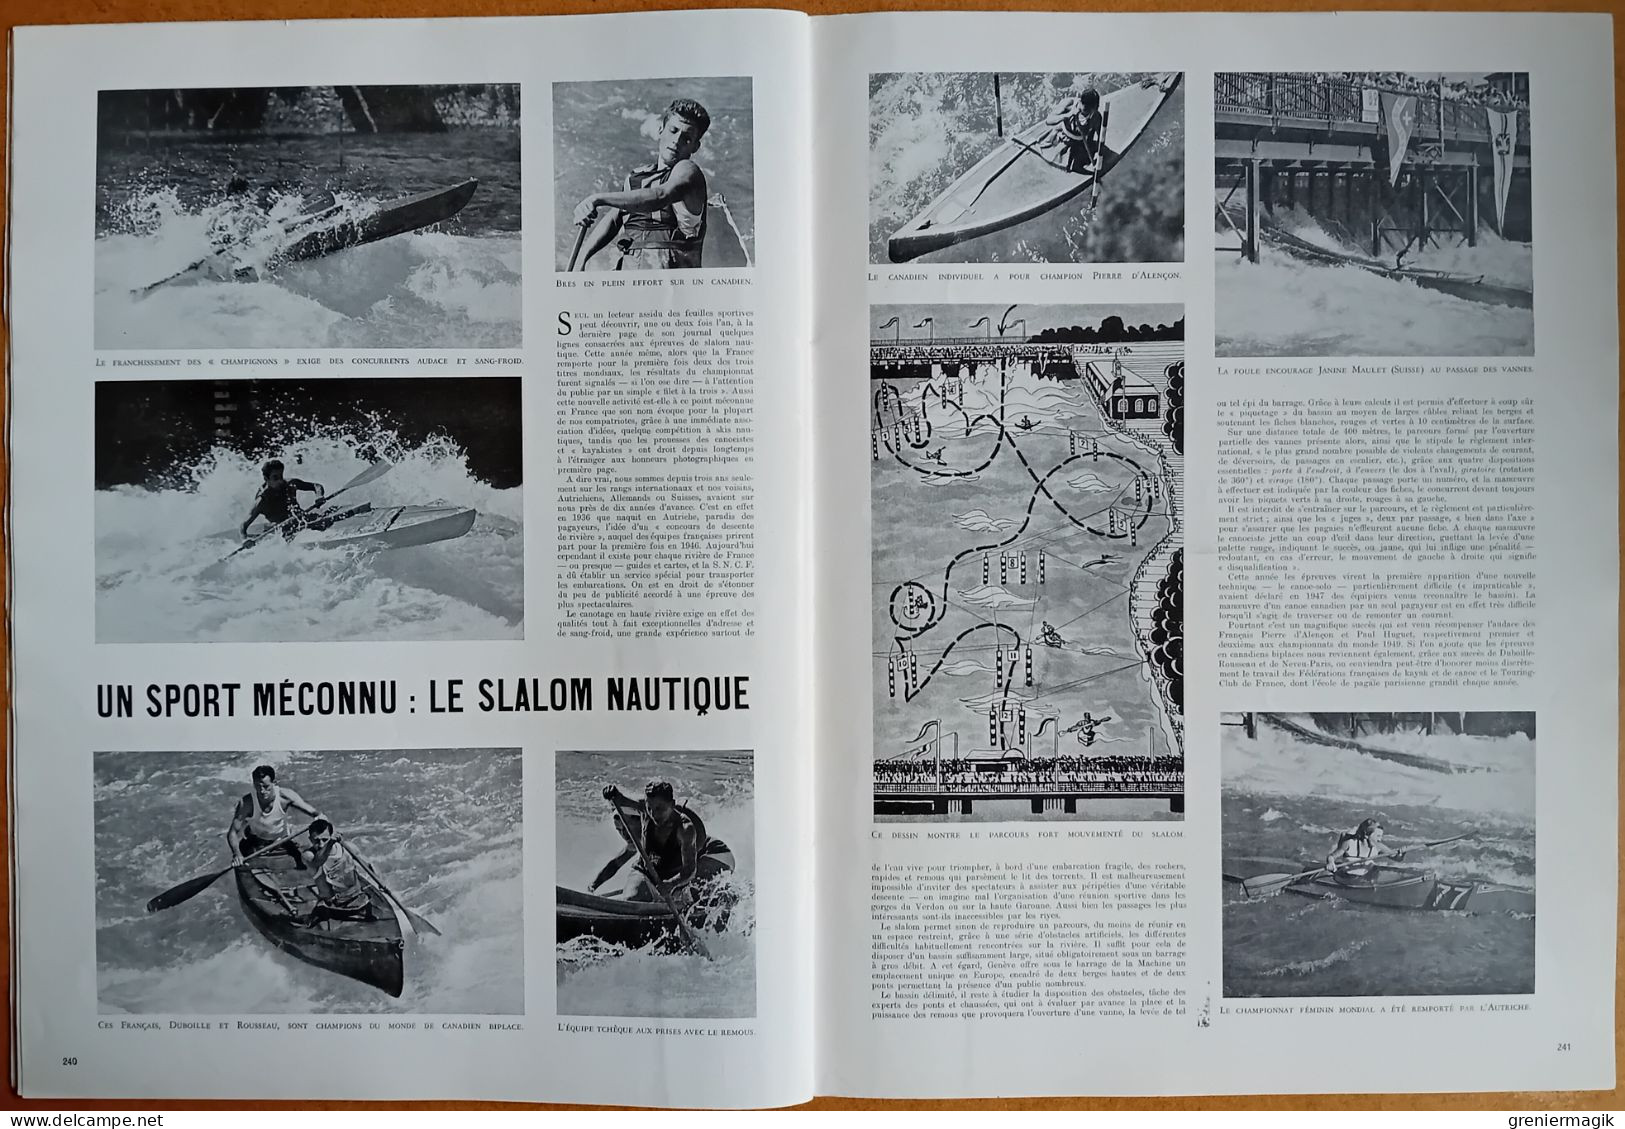 France Illustration N°203 03/09/1949 Duel Staline-Tito/Chine route de Canton/Barcelone courses de taureaux/Norvège/Lot